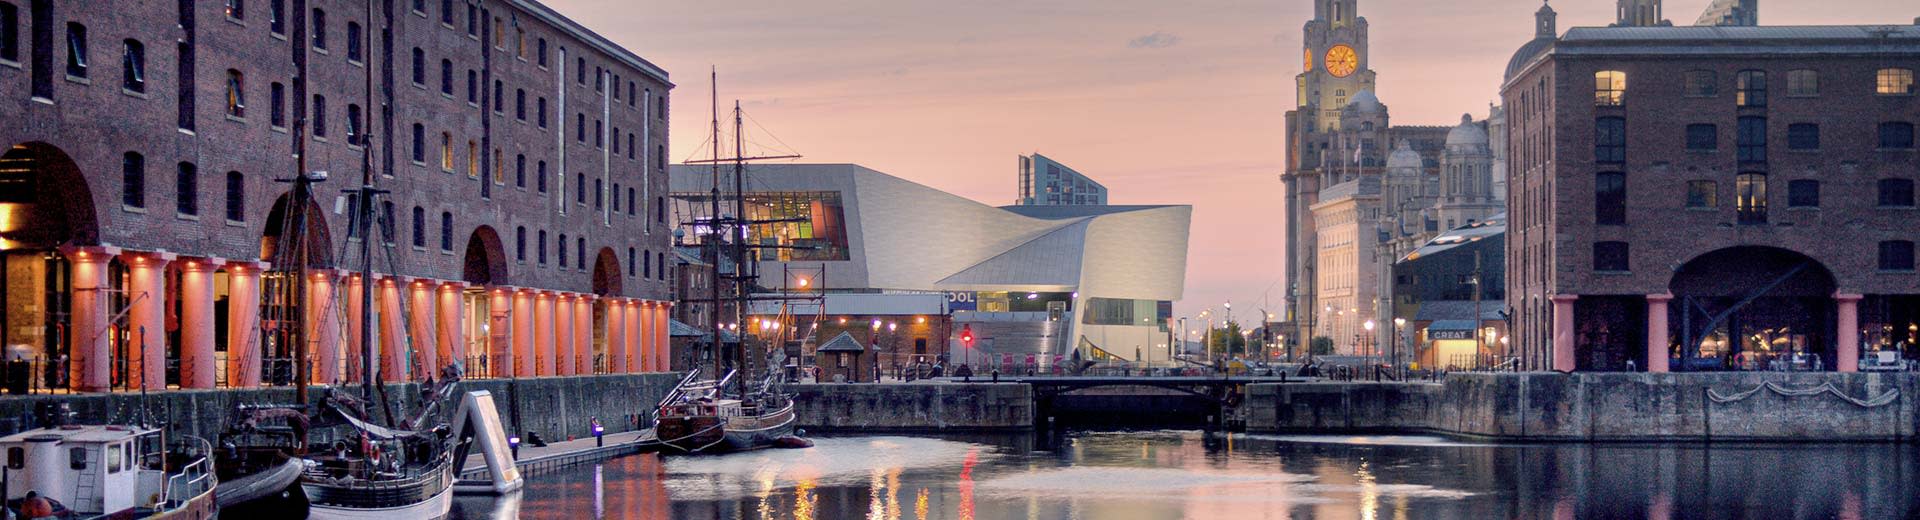 Die modernen Gebäude von Liverpool am Ufer des Flusses Mersey.